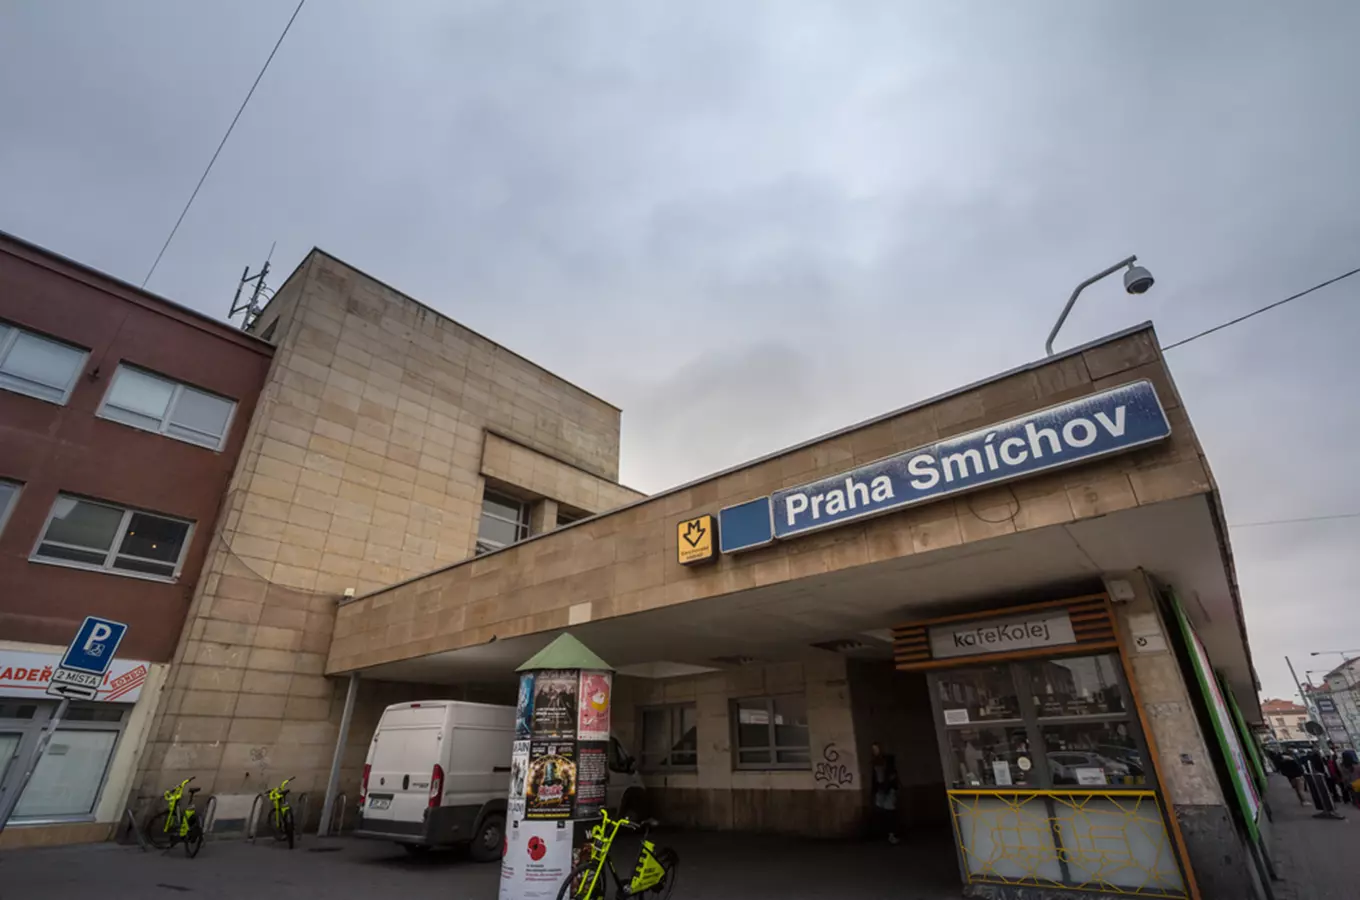 Smíchovské nádraží – druhé největší nádraží v Praze